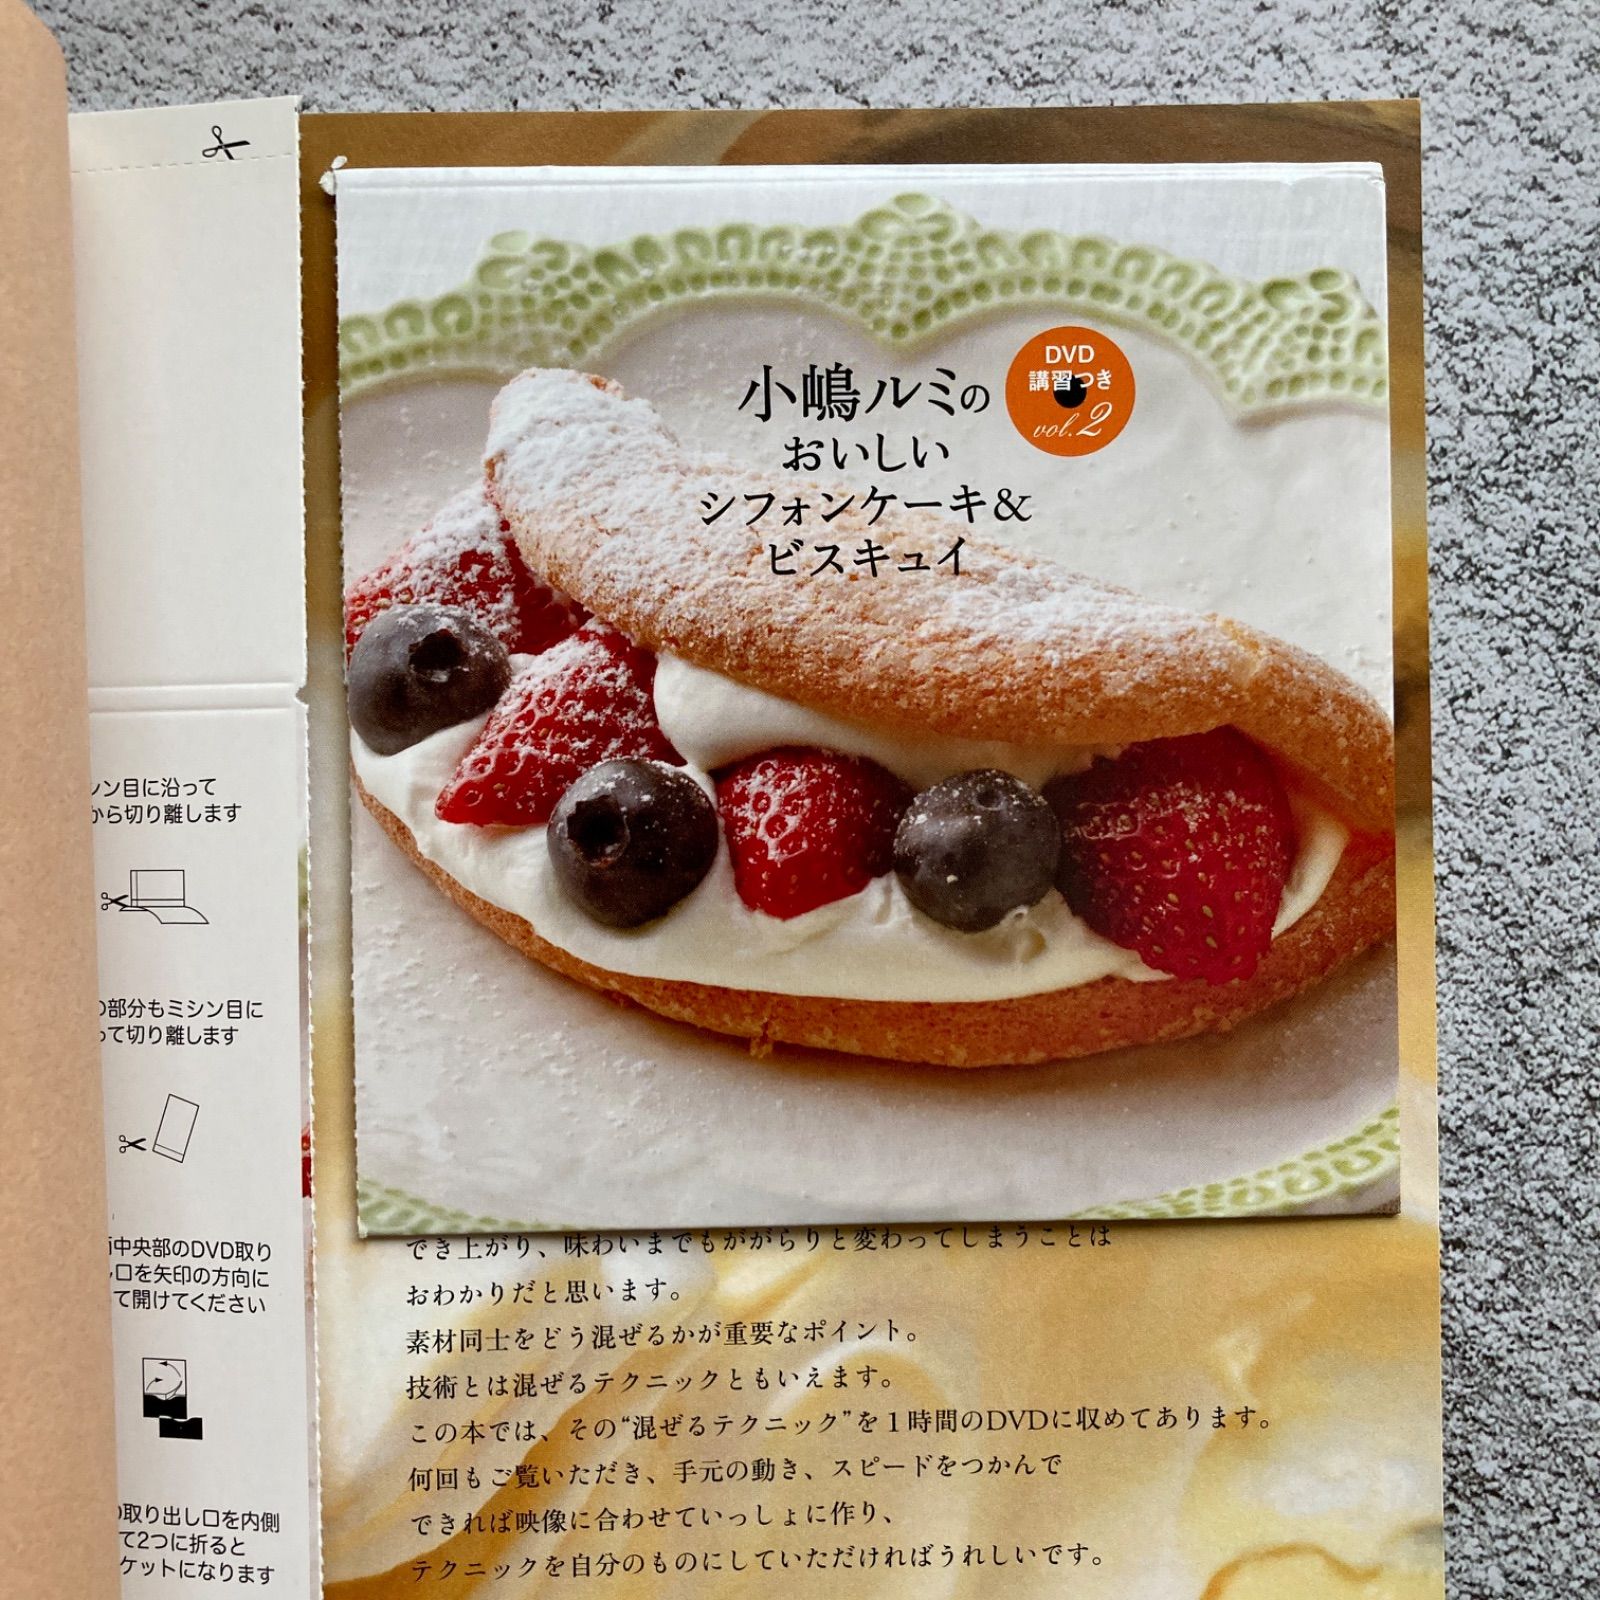 小嶋ルミのおいしいイチゴのショートケーキ&バタースポンジ 他2冊